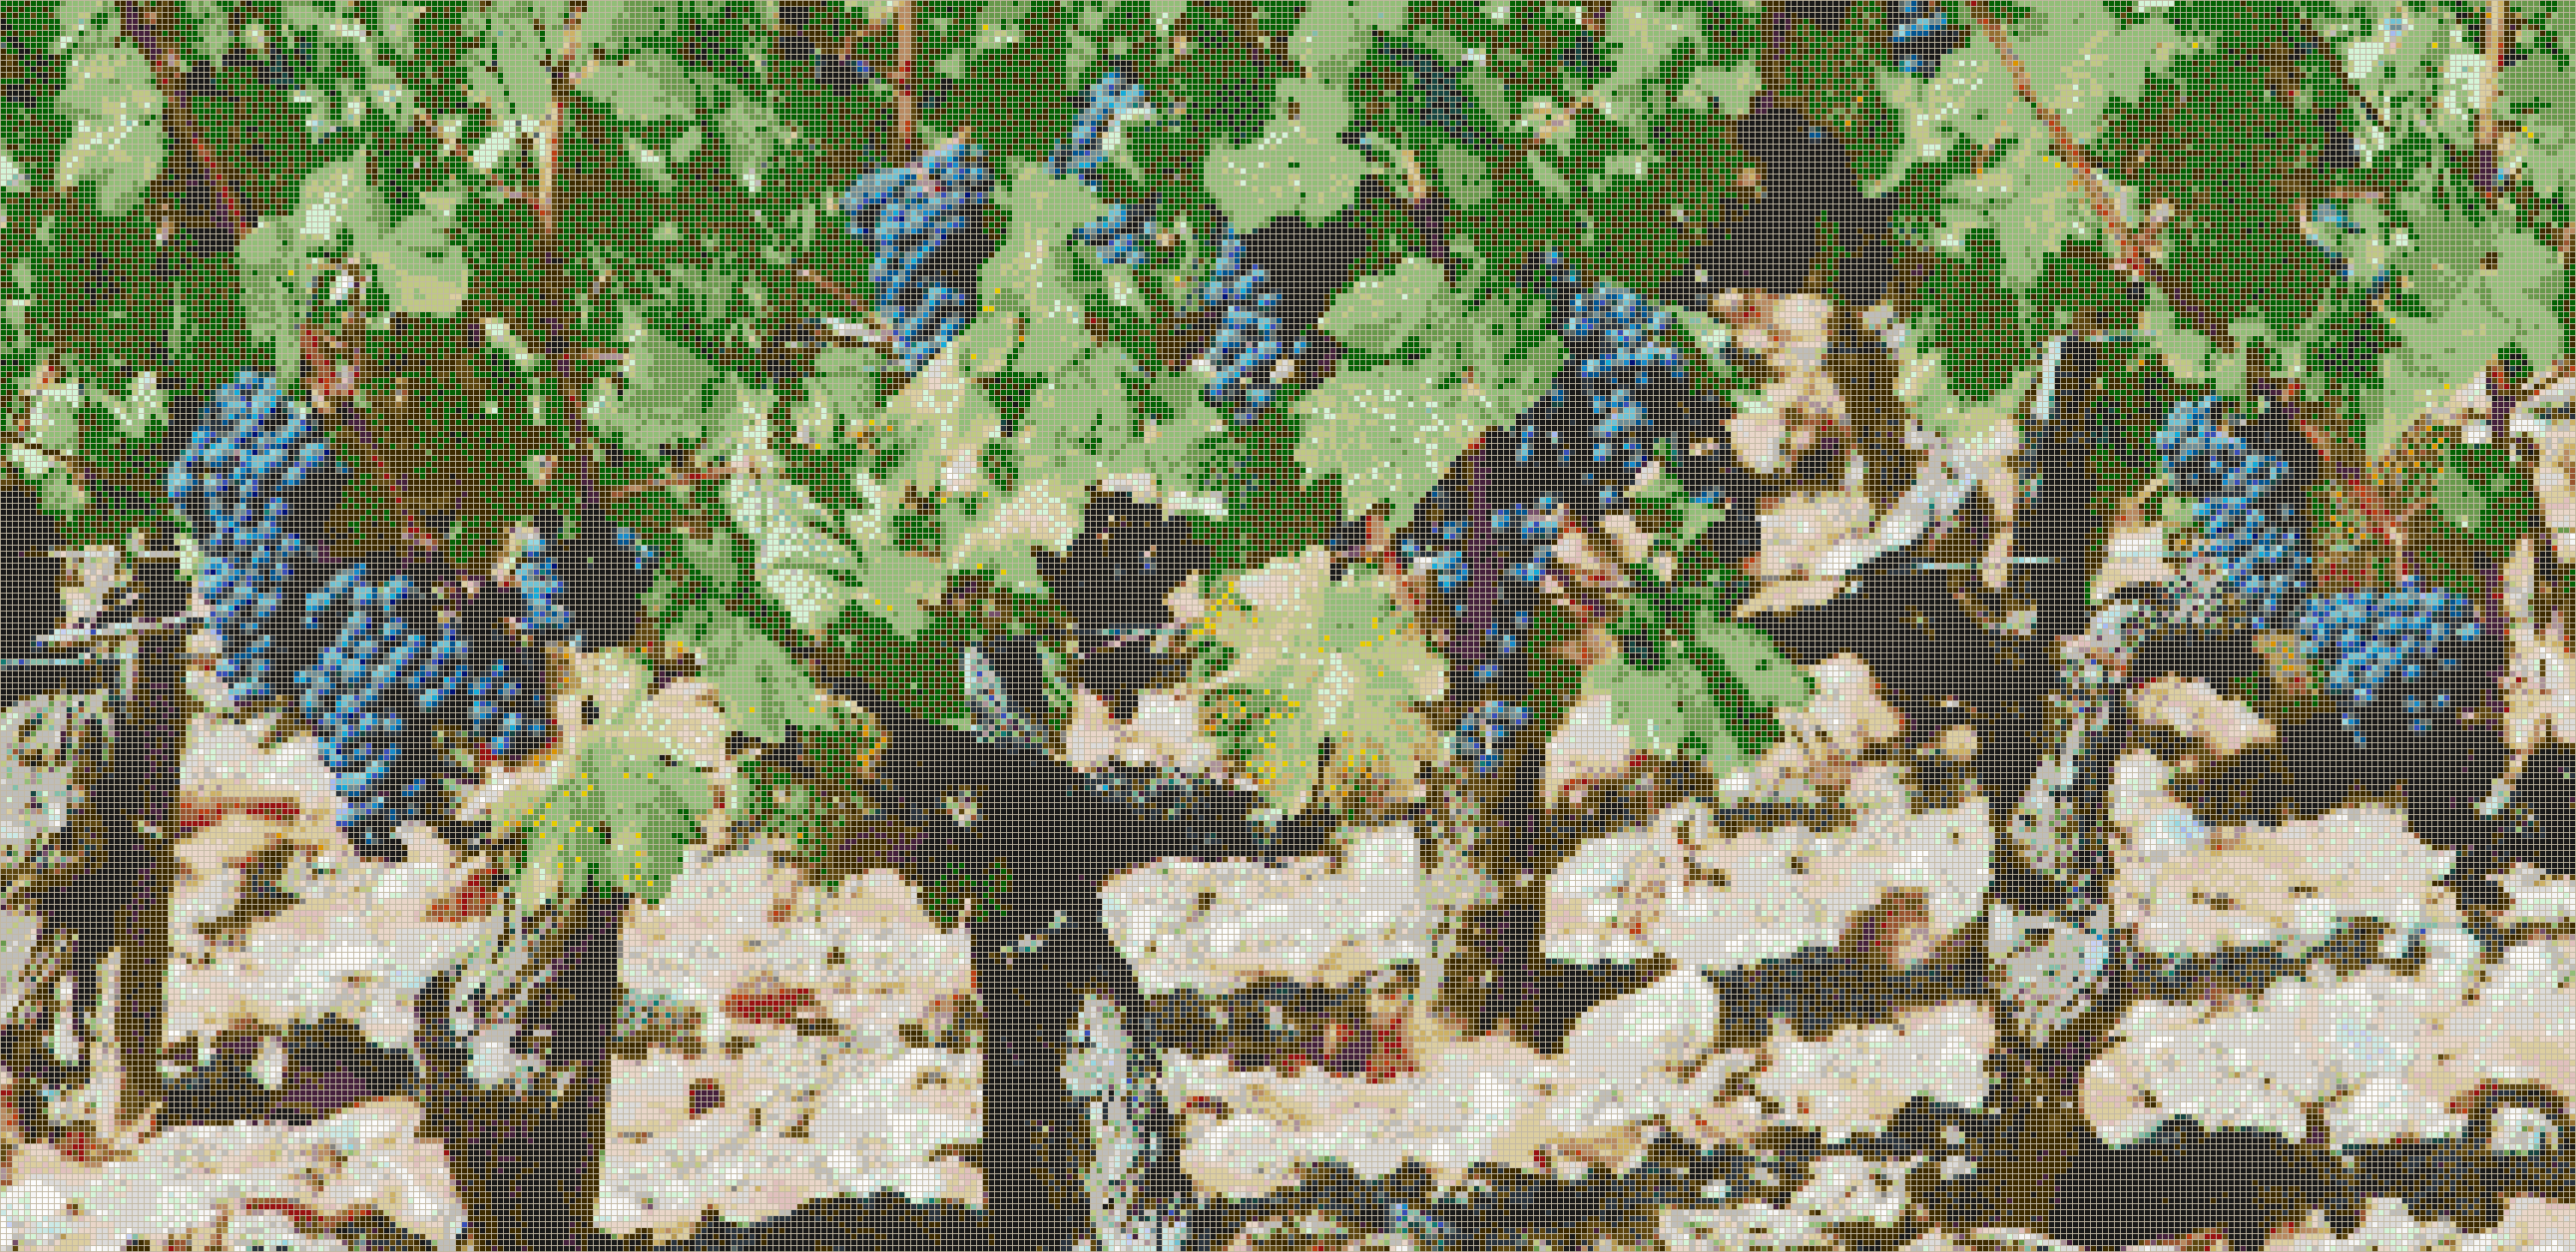 Bordeaux Vineyard - Mosaic Tile Picture Art